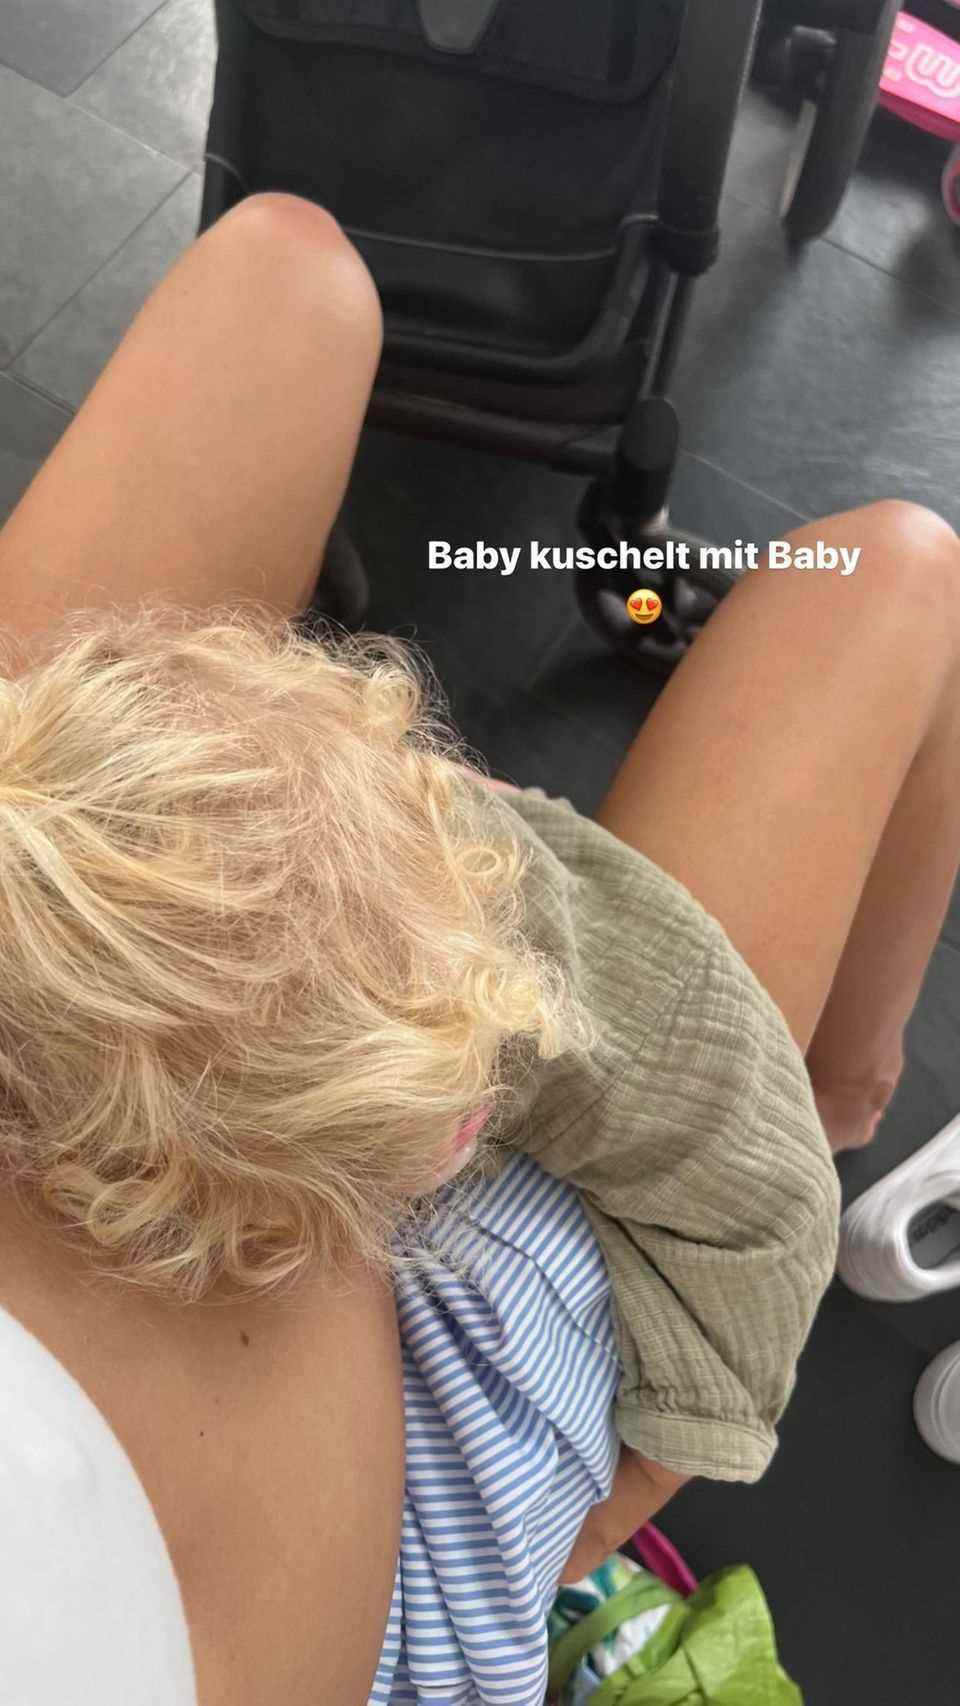 Steffi Graf: Daughter Jaz tightens her muscles between tennis balls and dumbbells